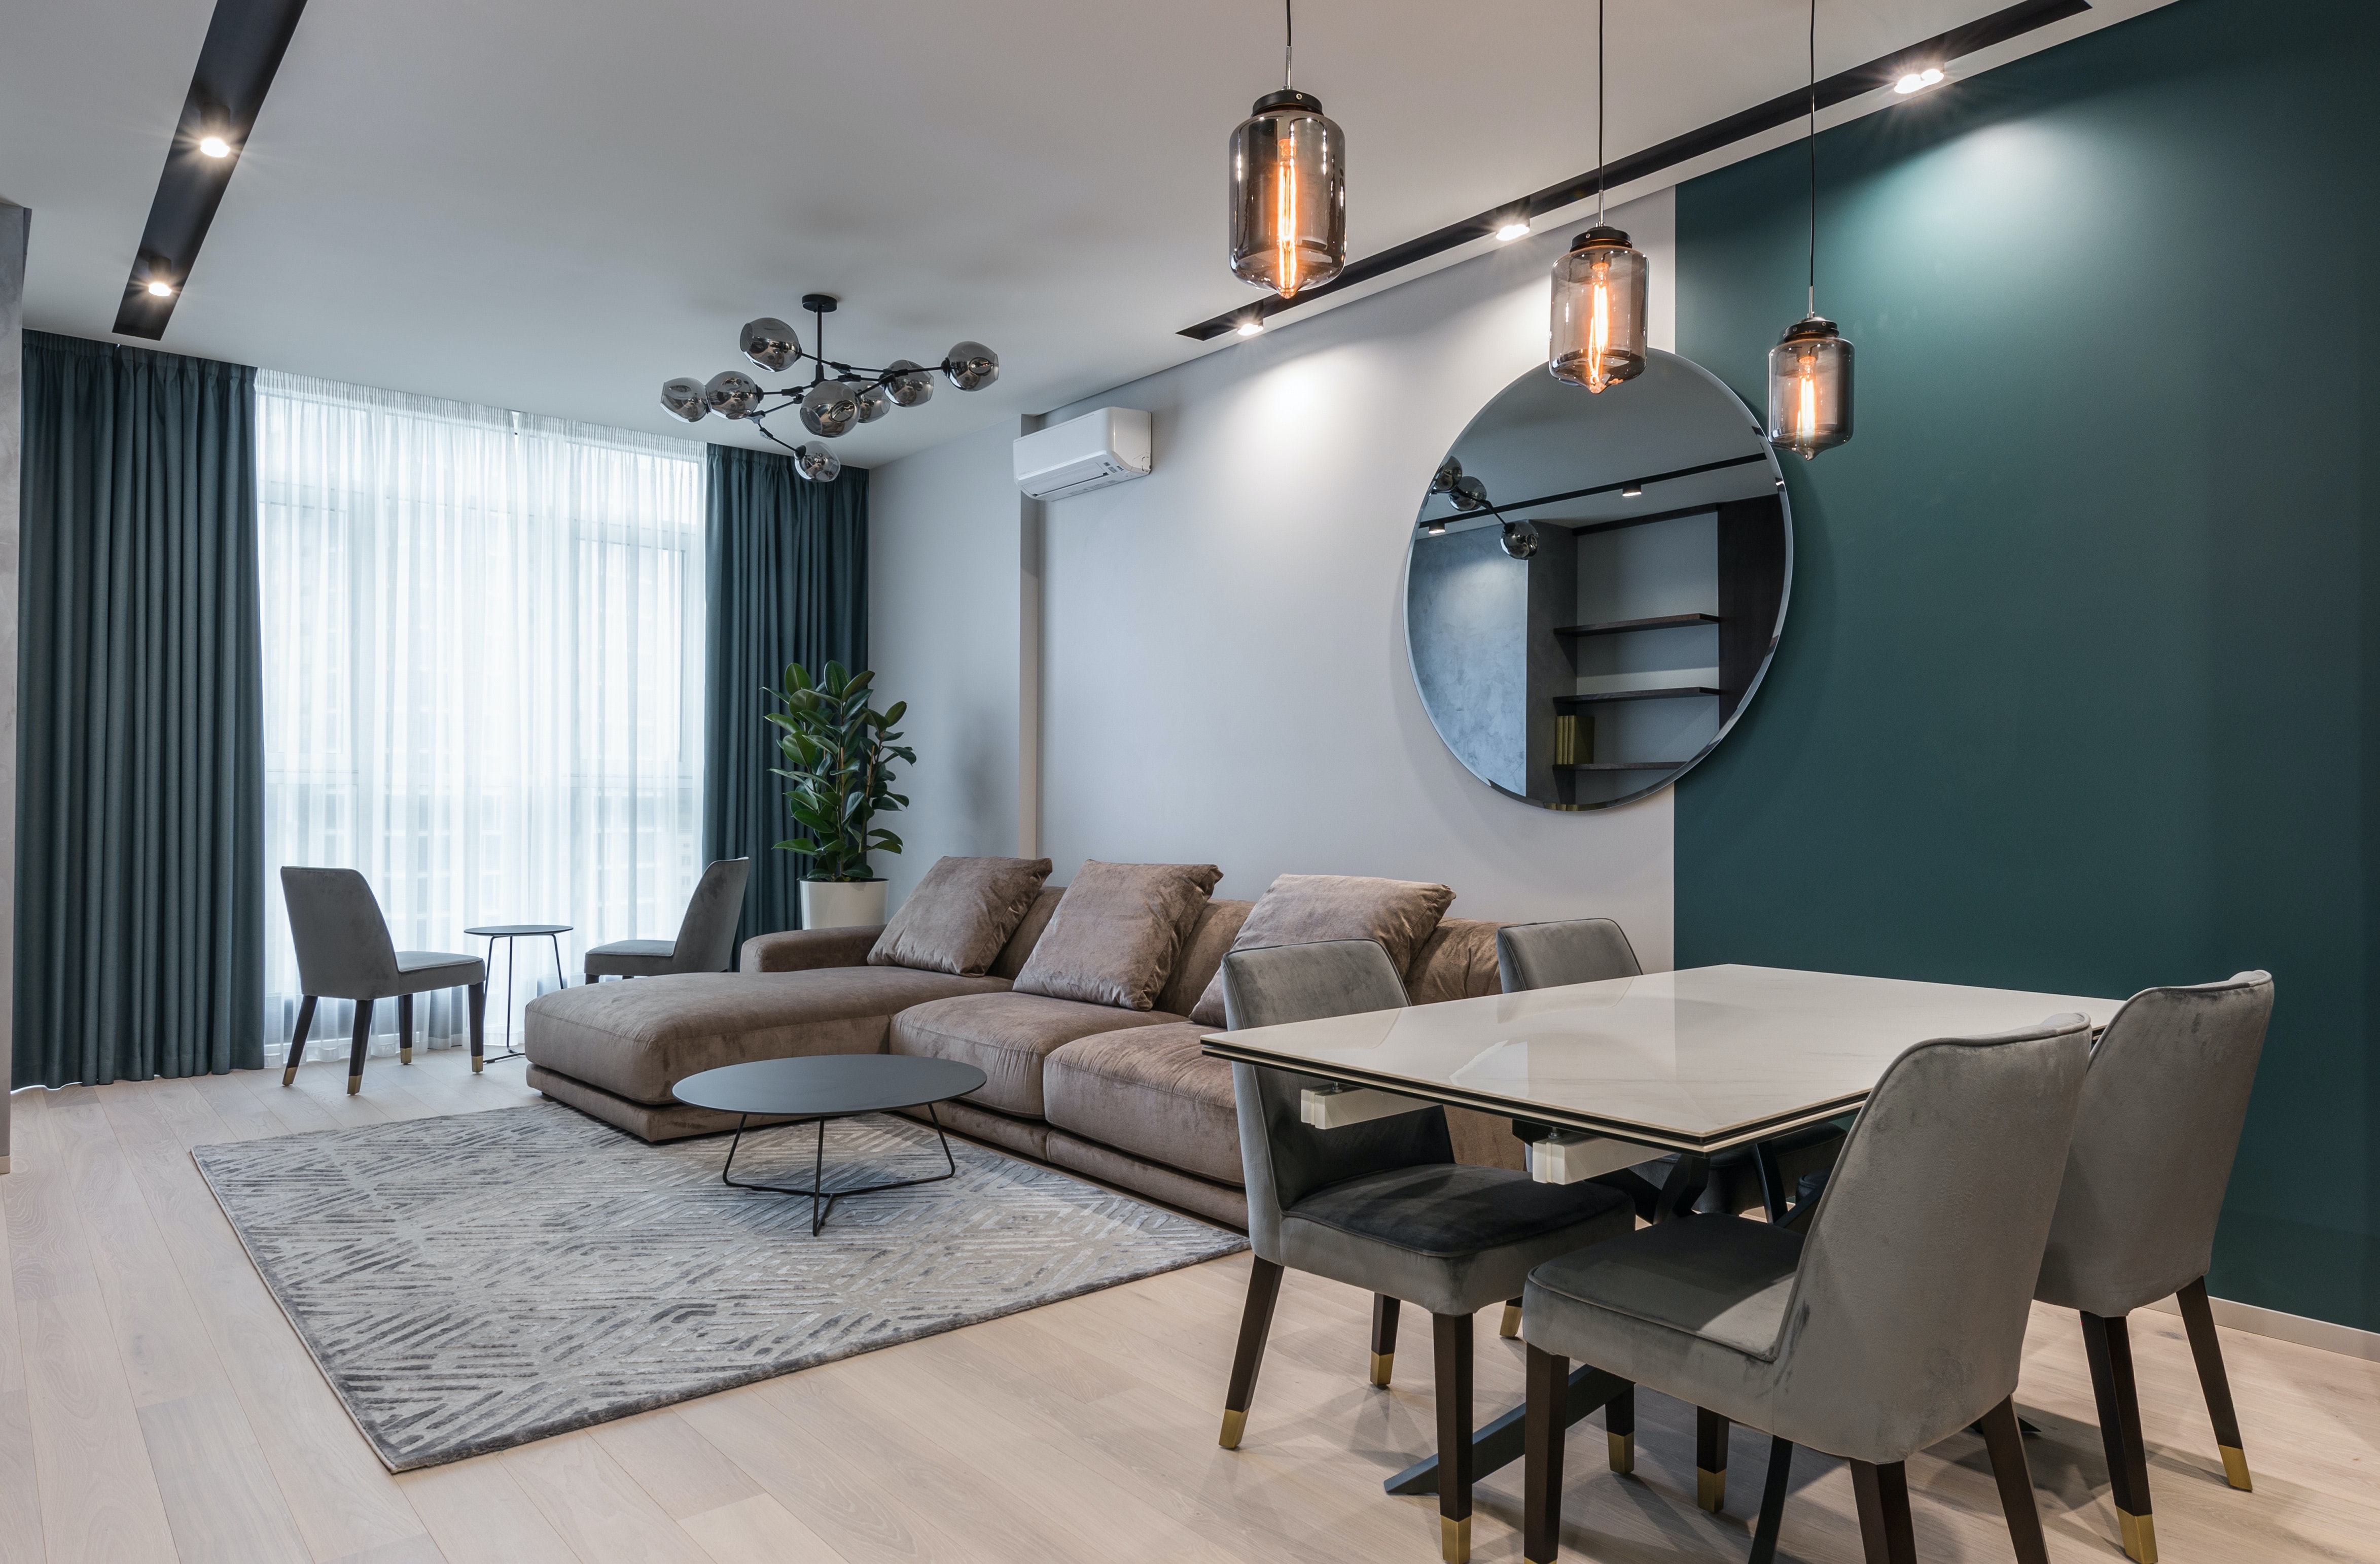 Nowoczesne mieszkanie - prostota minimalizm i elegancja